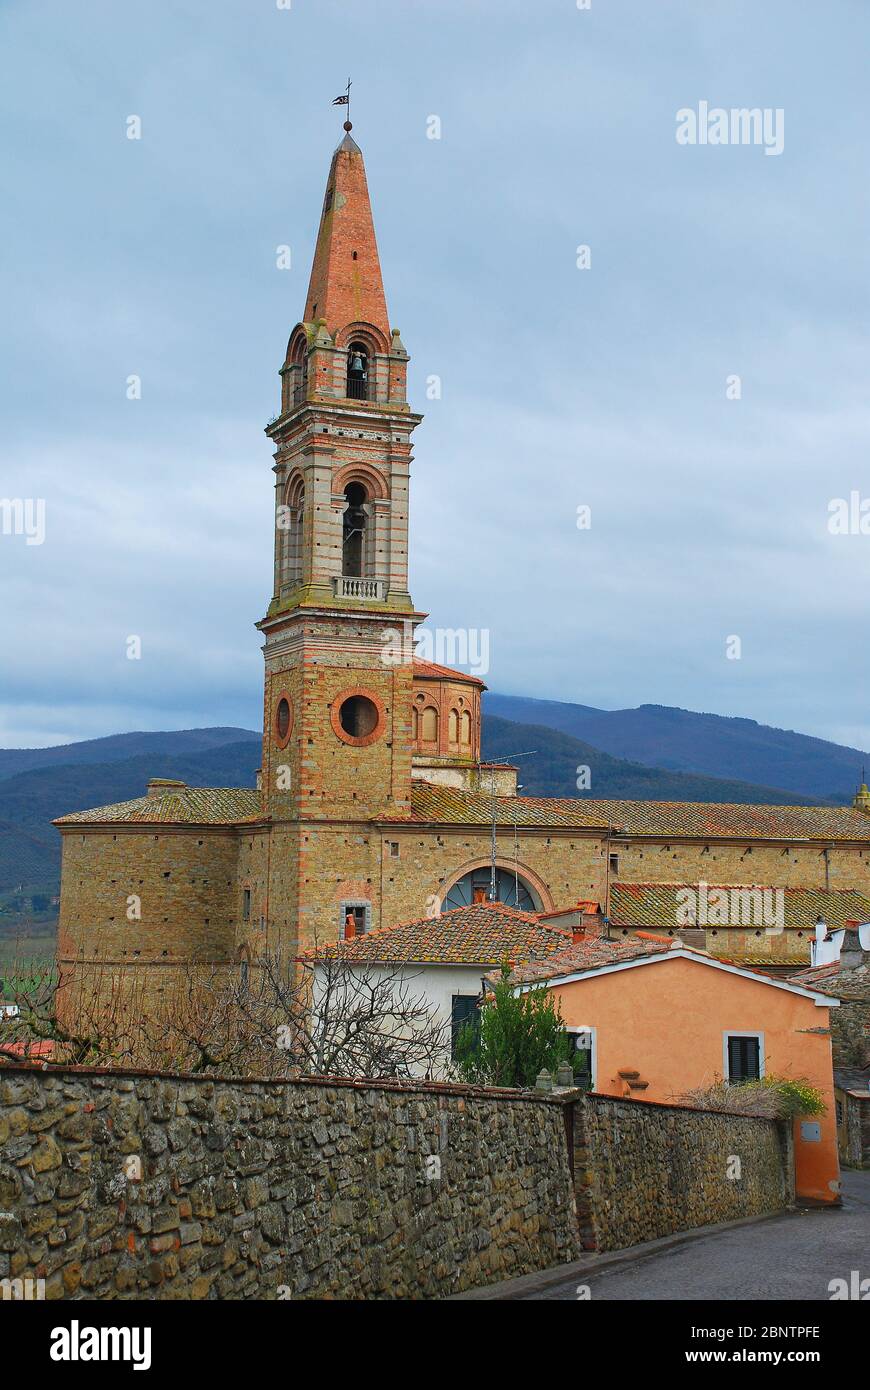 The Chiesa San Giuliano in the Tuscan hill town of Castiglion Fiorentino in  Italy Stock Photo - Alamy